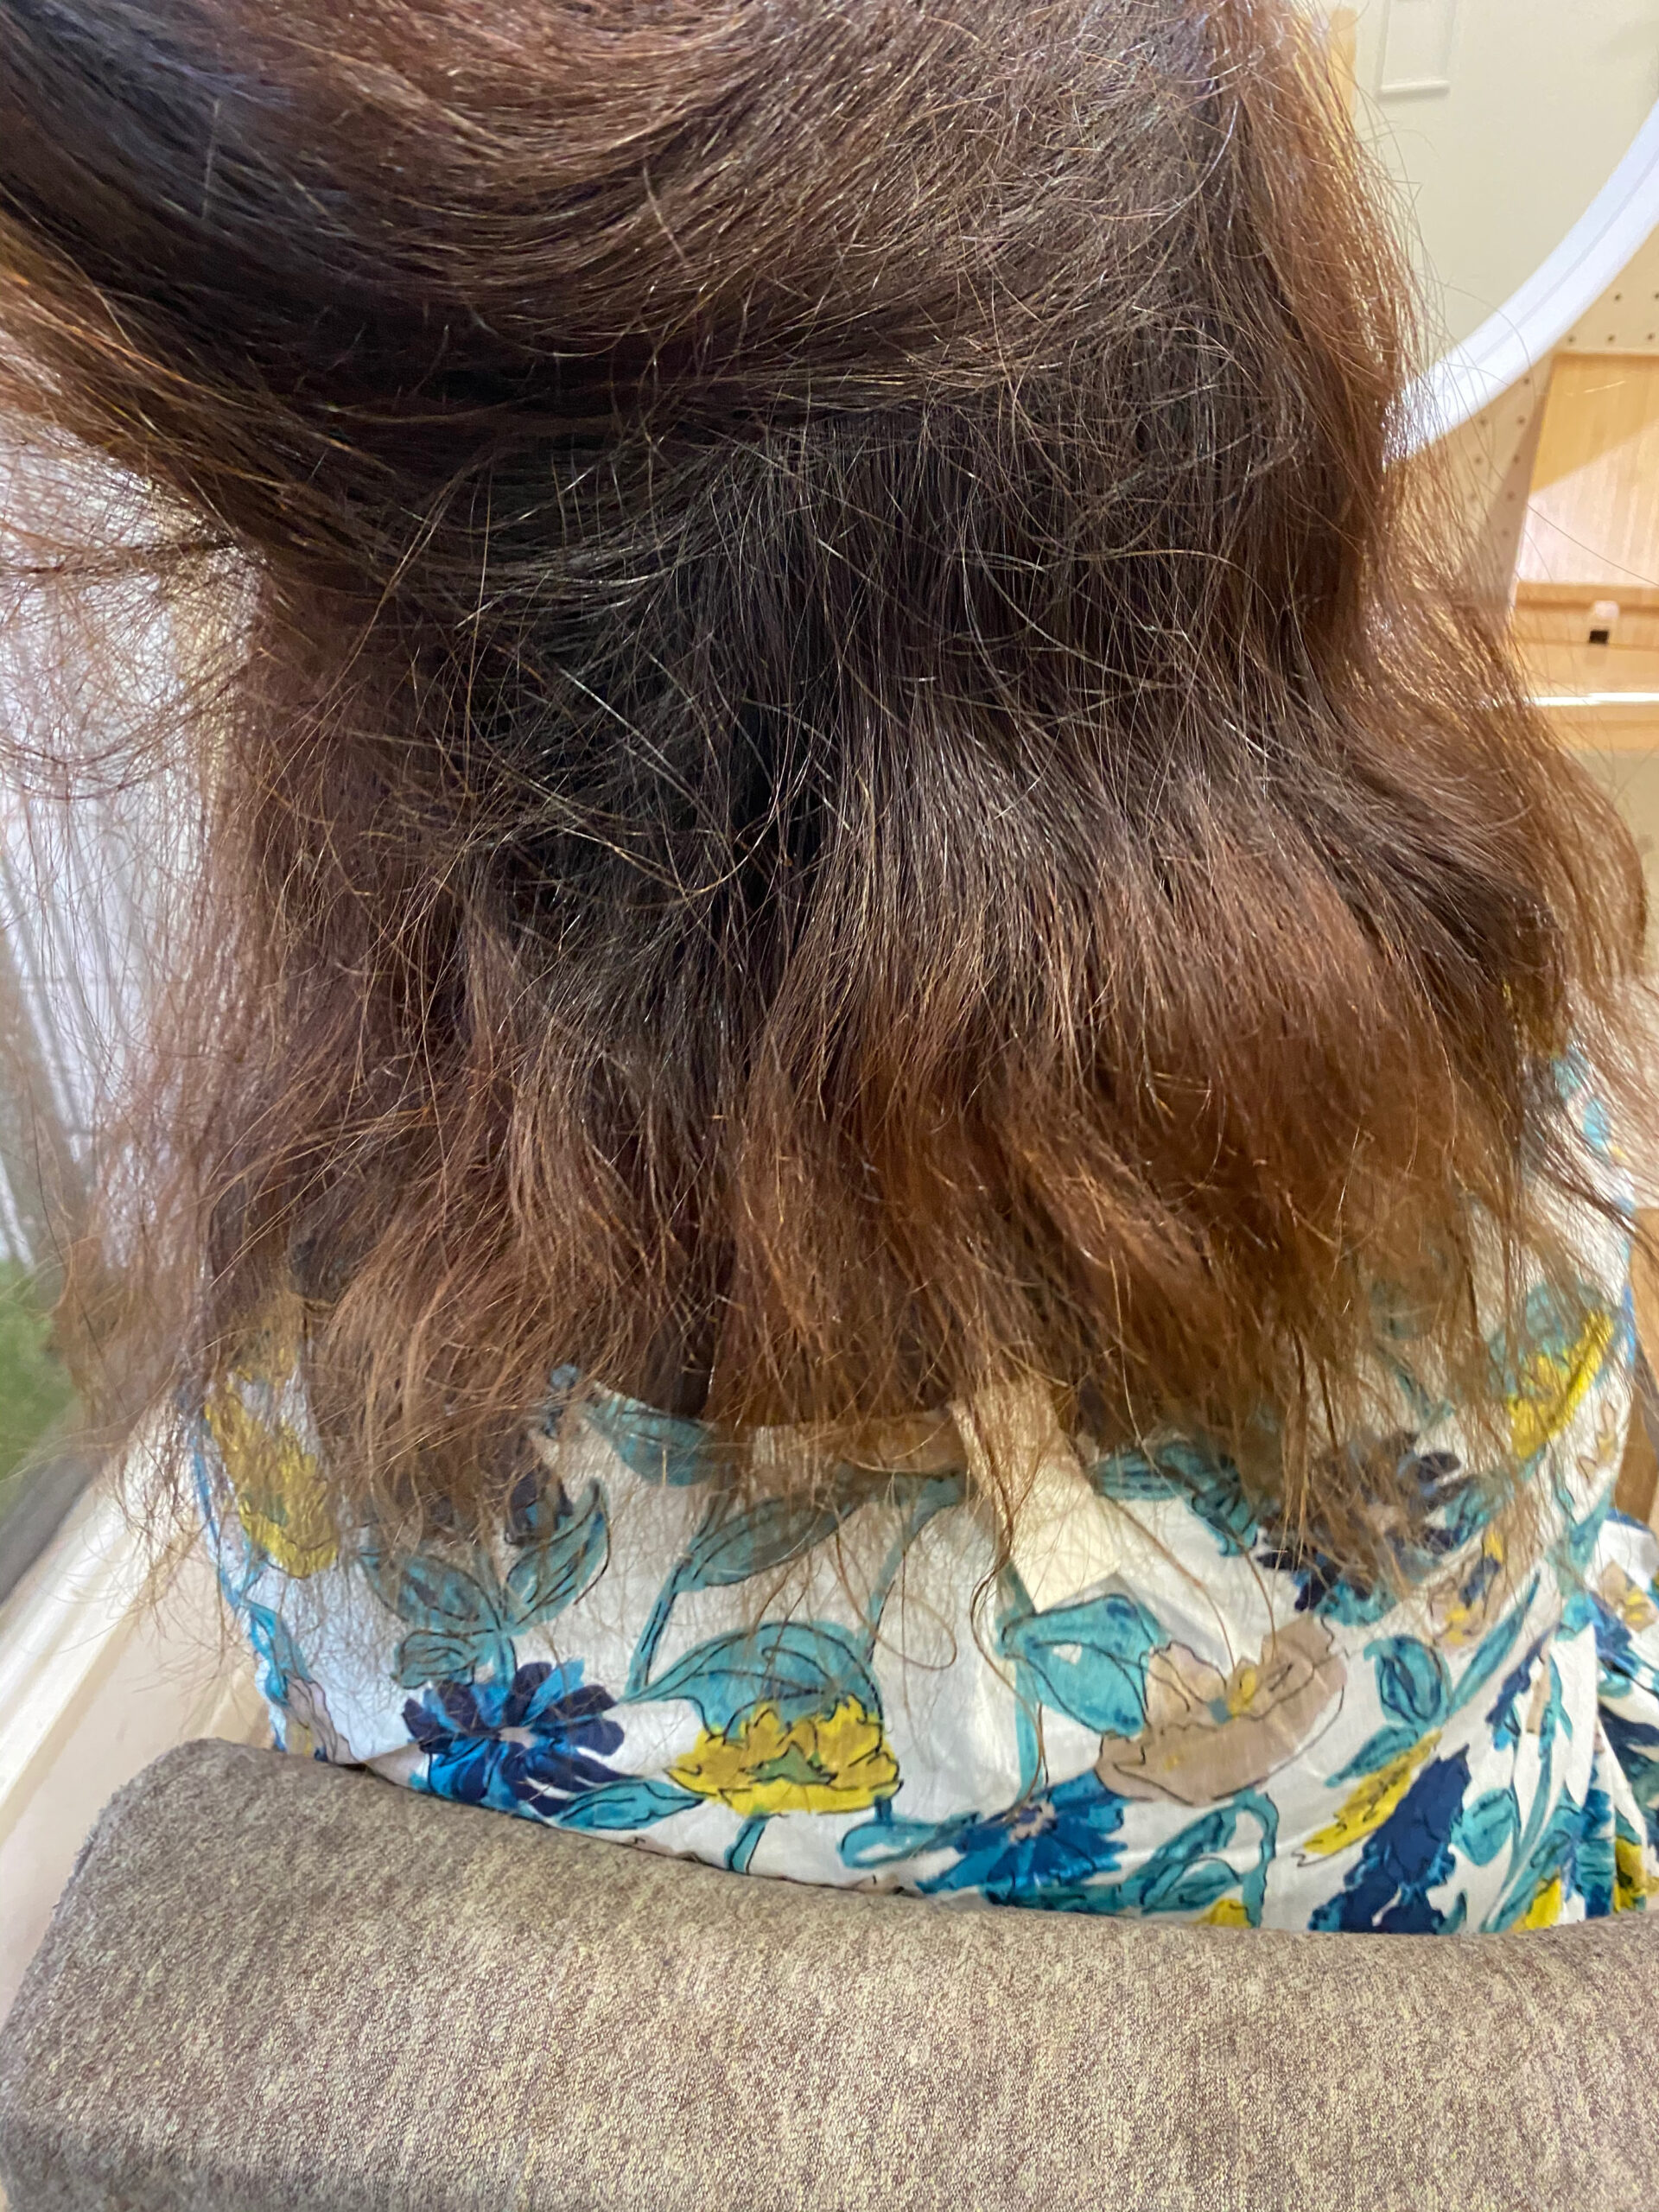 ビビリ矯正とオレオルカラーで艶髪ストレートヘア。原宿・表参道『髪のお悩みを解決するヘアケア美容師の挑戦』